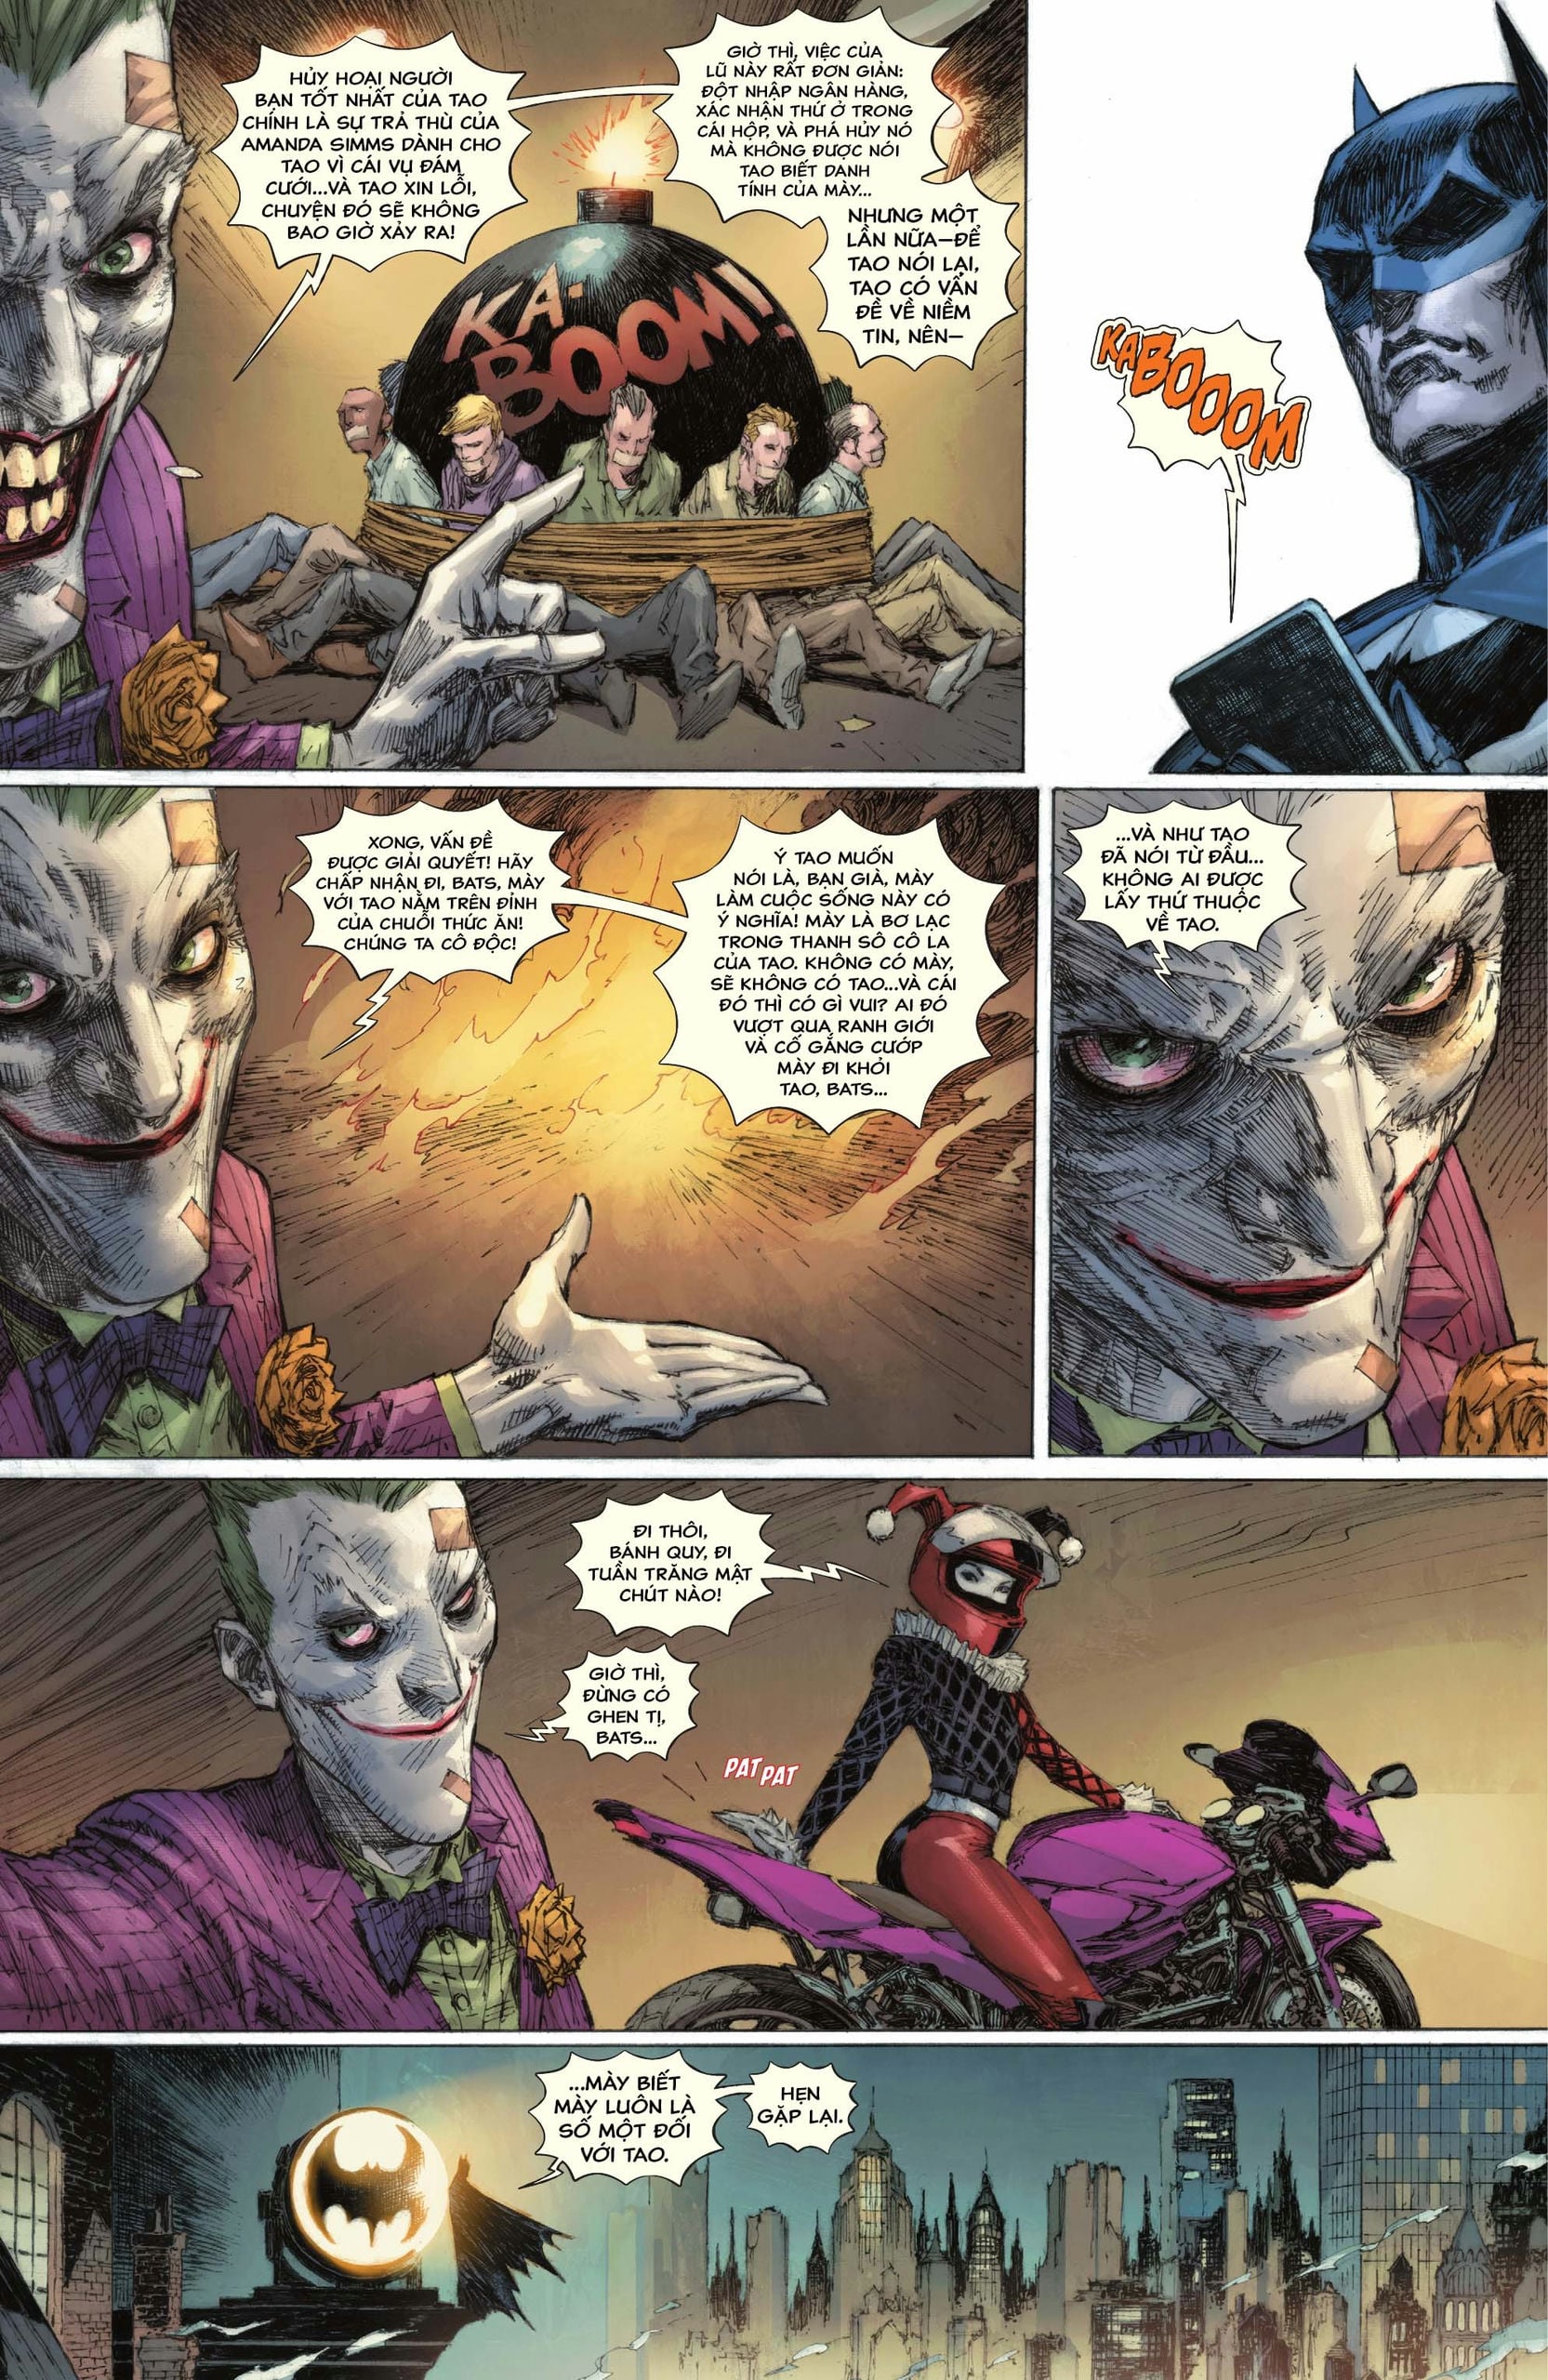 https://langgeek.net/wp-content/webpc-passthru.php?src=https://langgeek.net/wp-content/uploads/2023/05/Batman-_-The-Joker-The-Deadly-Duo-2022-007-025.jpg&nocache=1